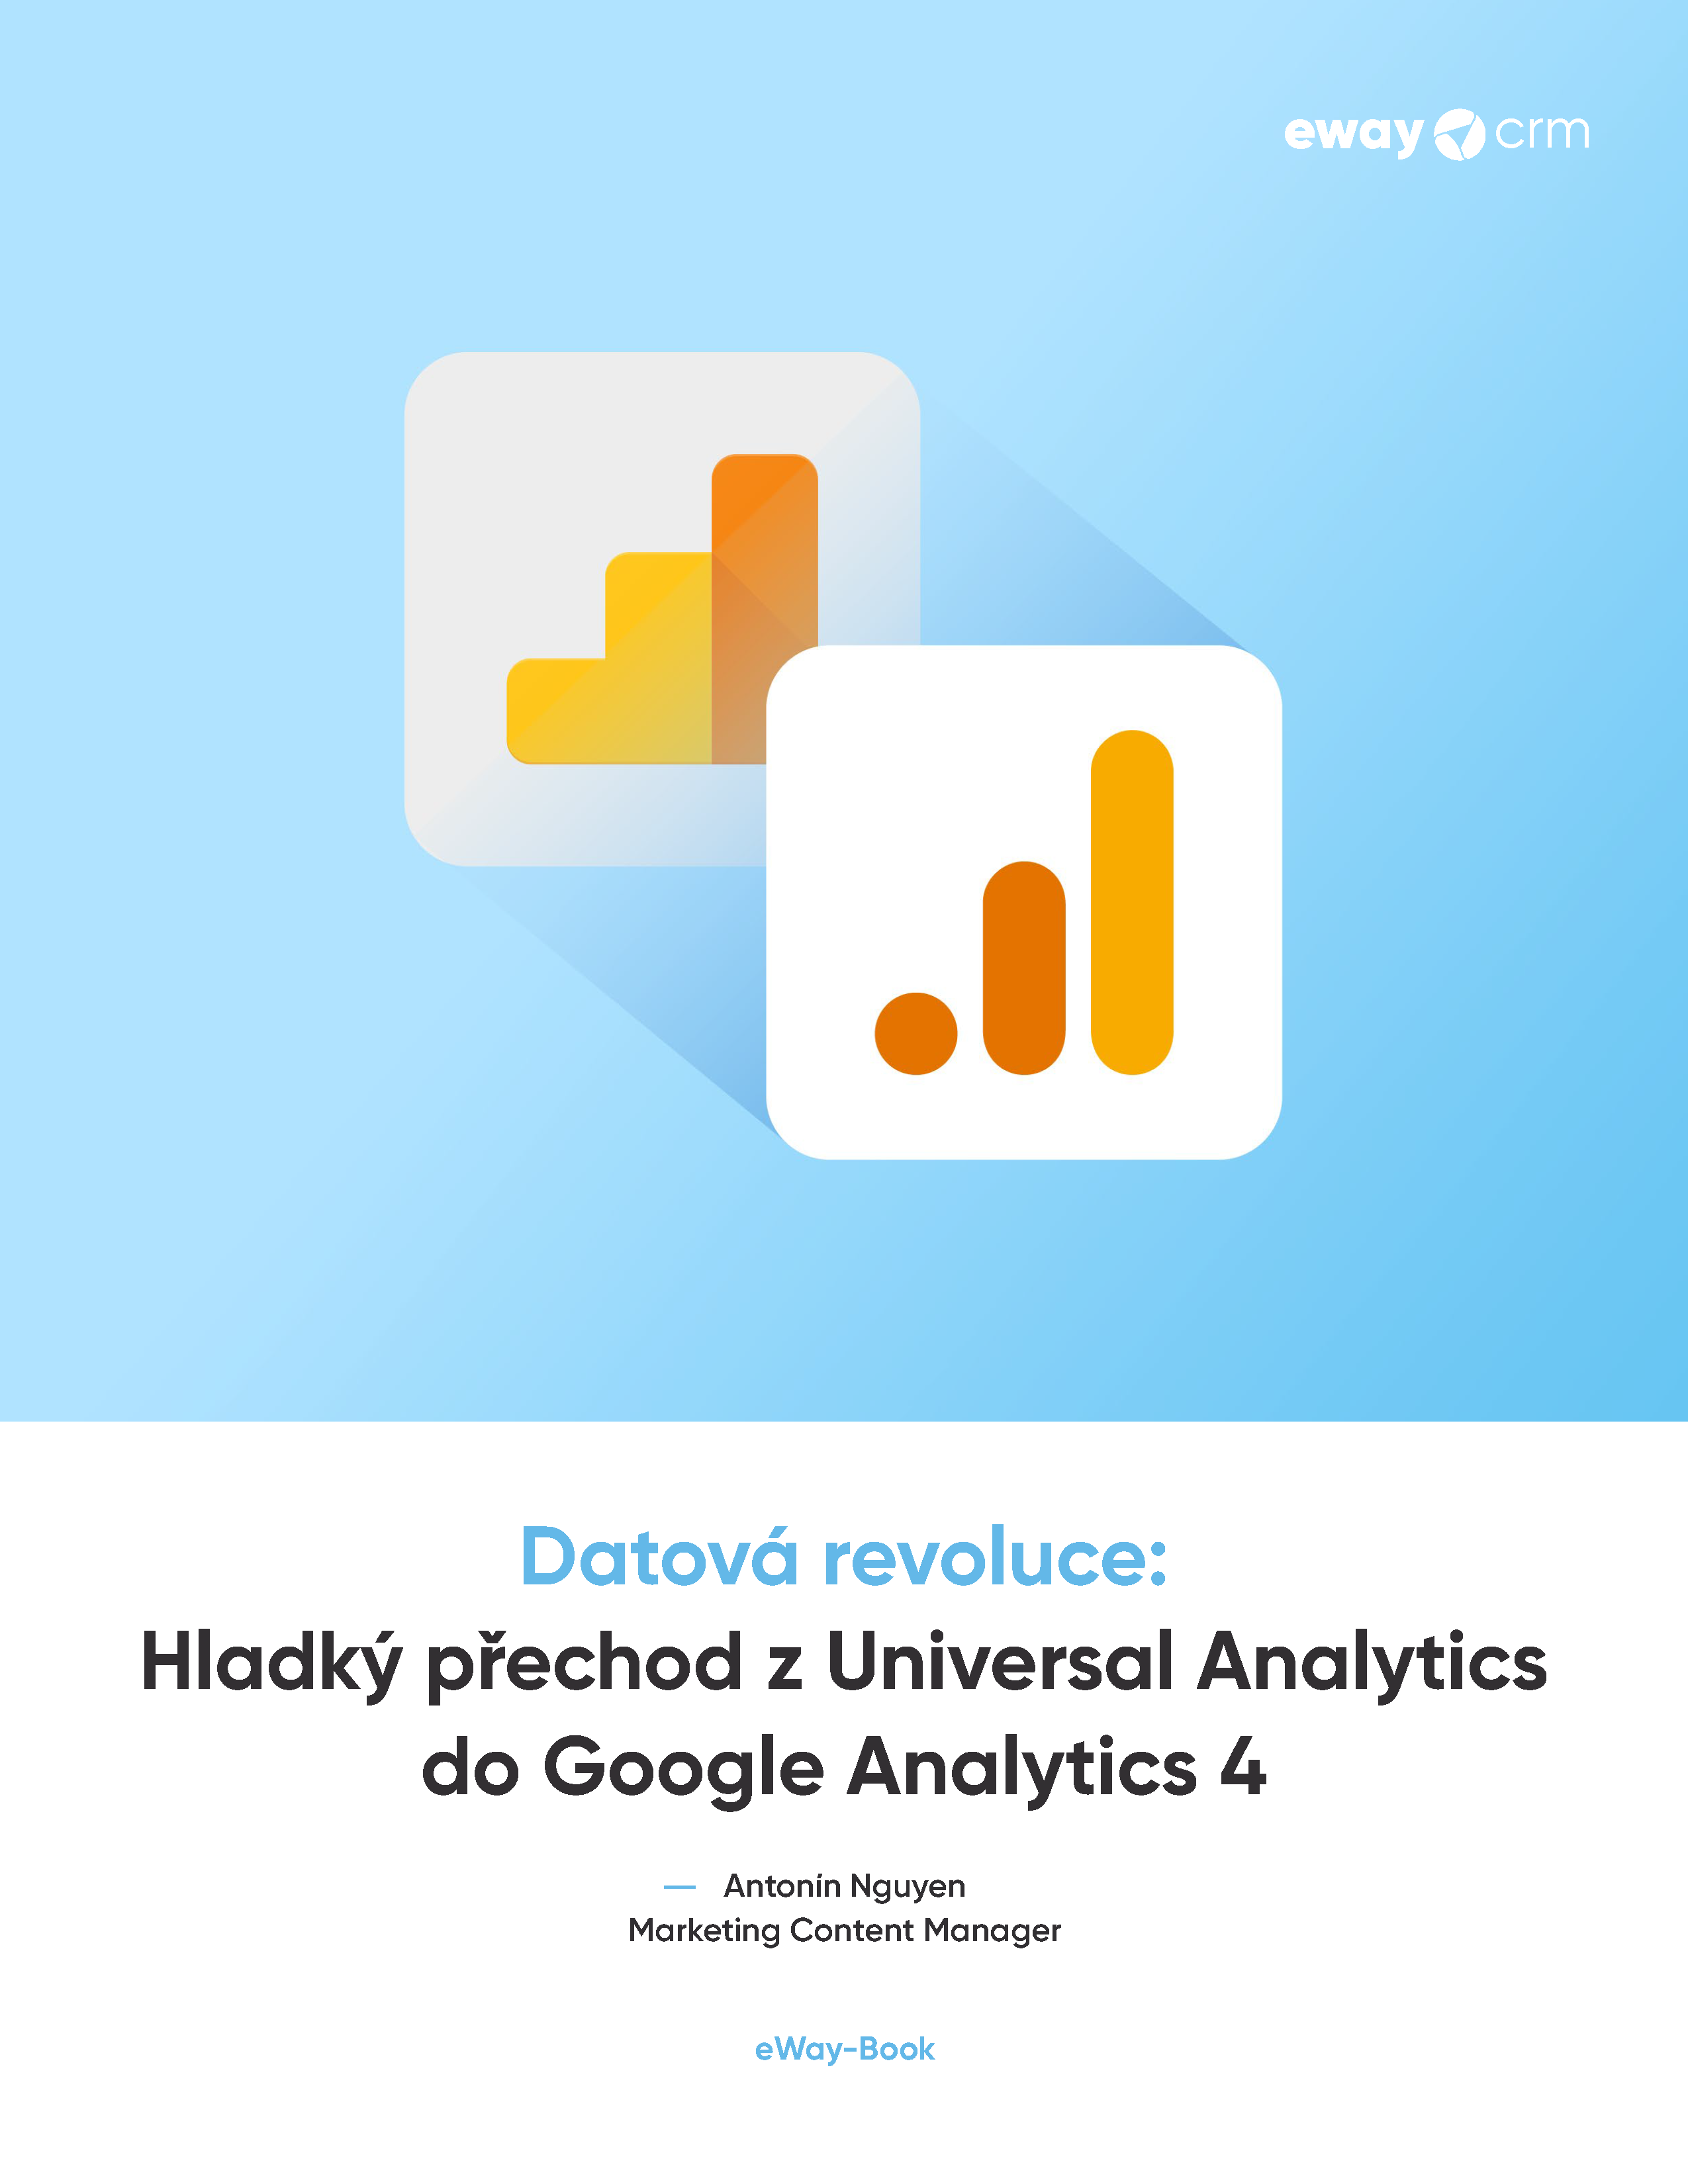 Hladký přechod z Universal Analytics do Google Analytics 4